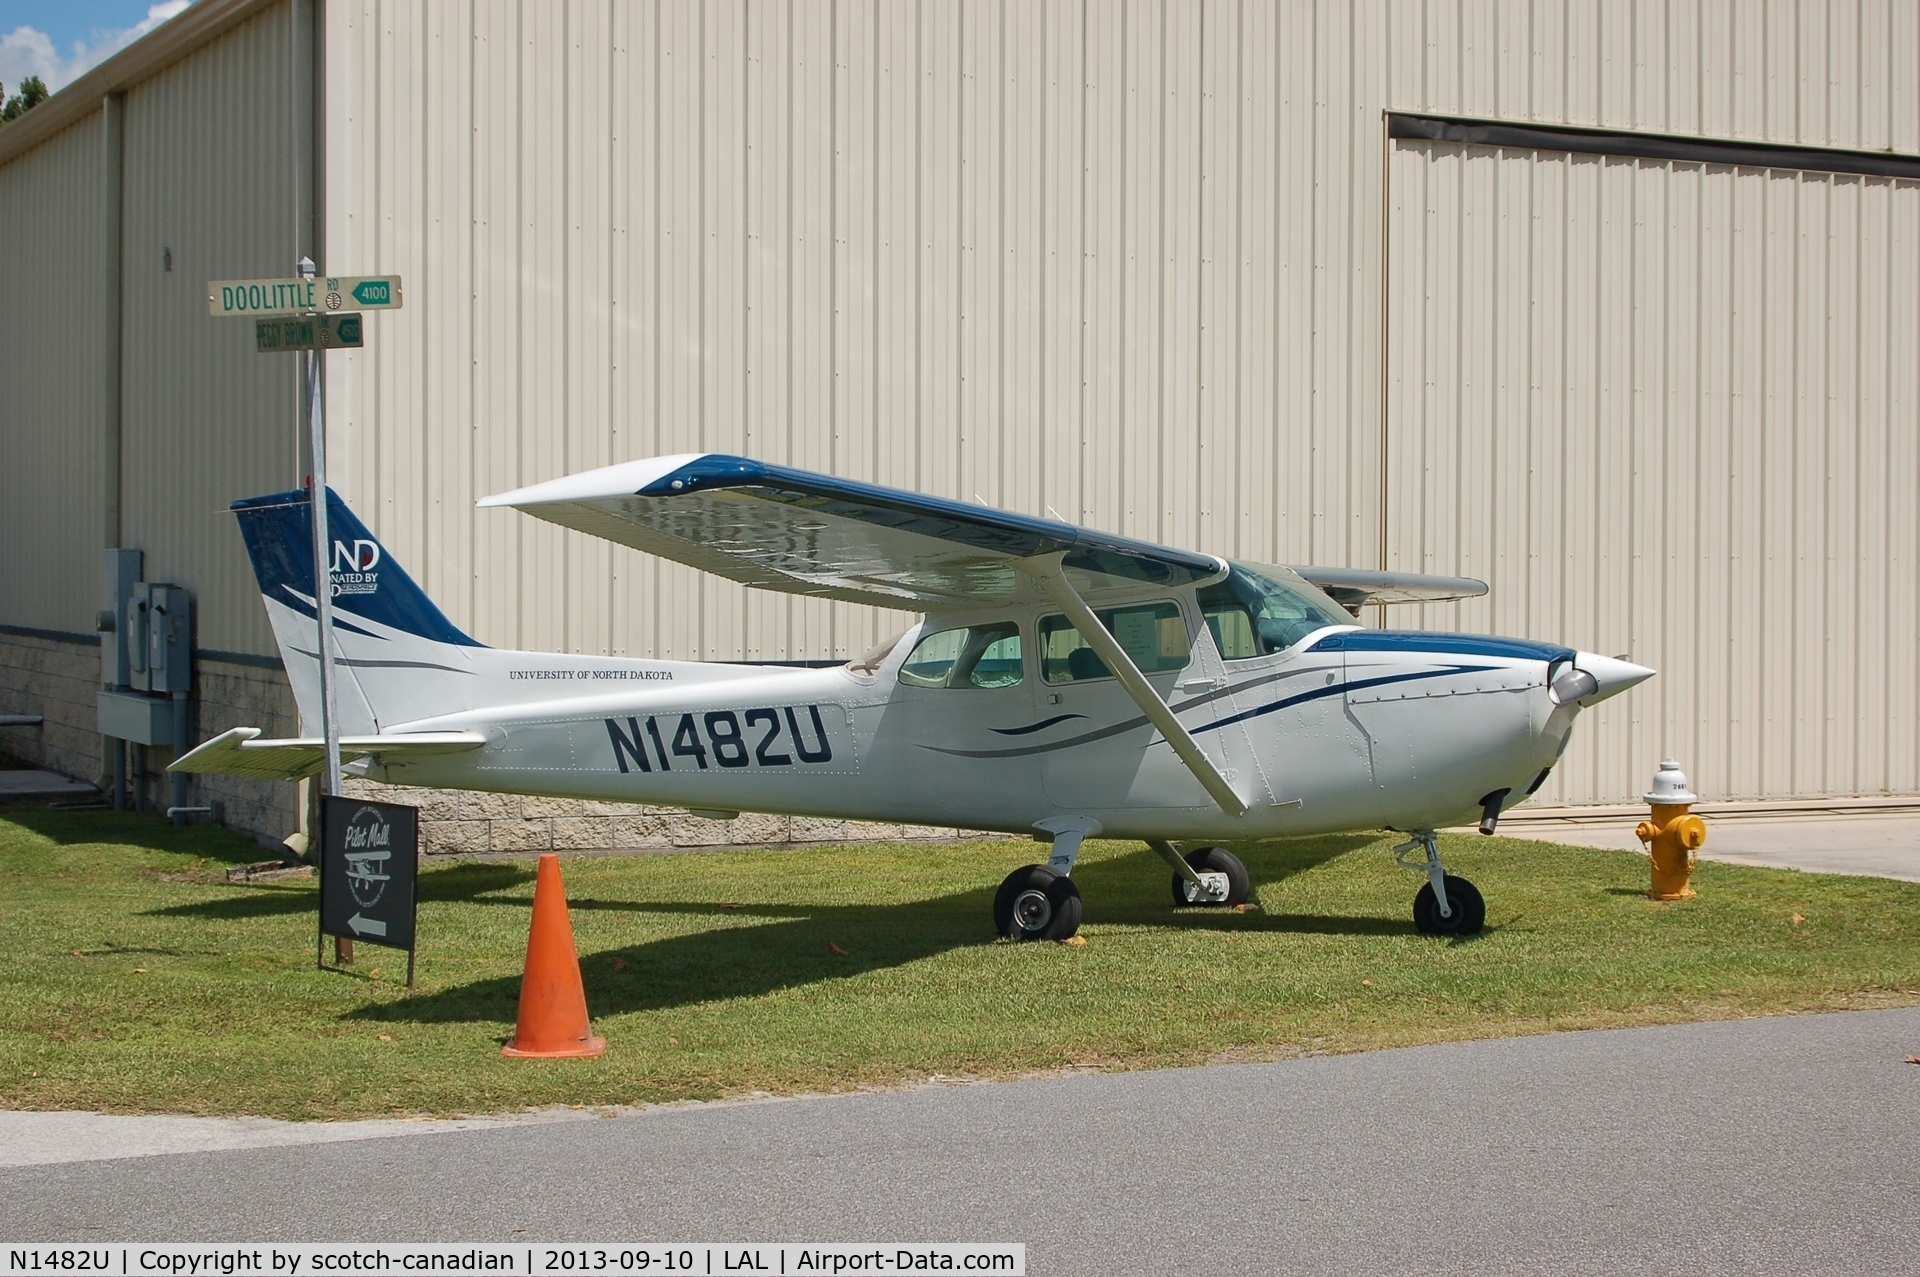 N1482U, 1976 Cessna 172M C/N 17267149, 1976 Cessna 172M, N1482U at the Florida Air Museum, Lakeland Linder Regional Airport, Lakeland, FL